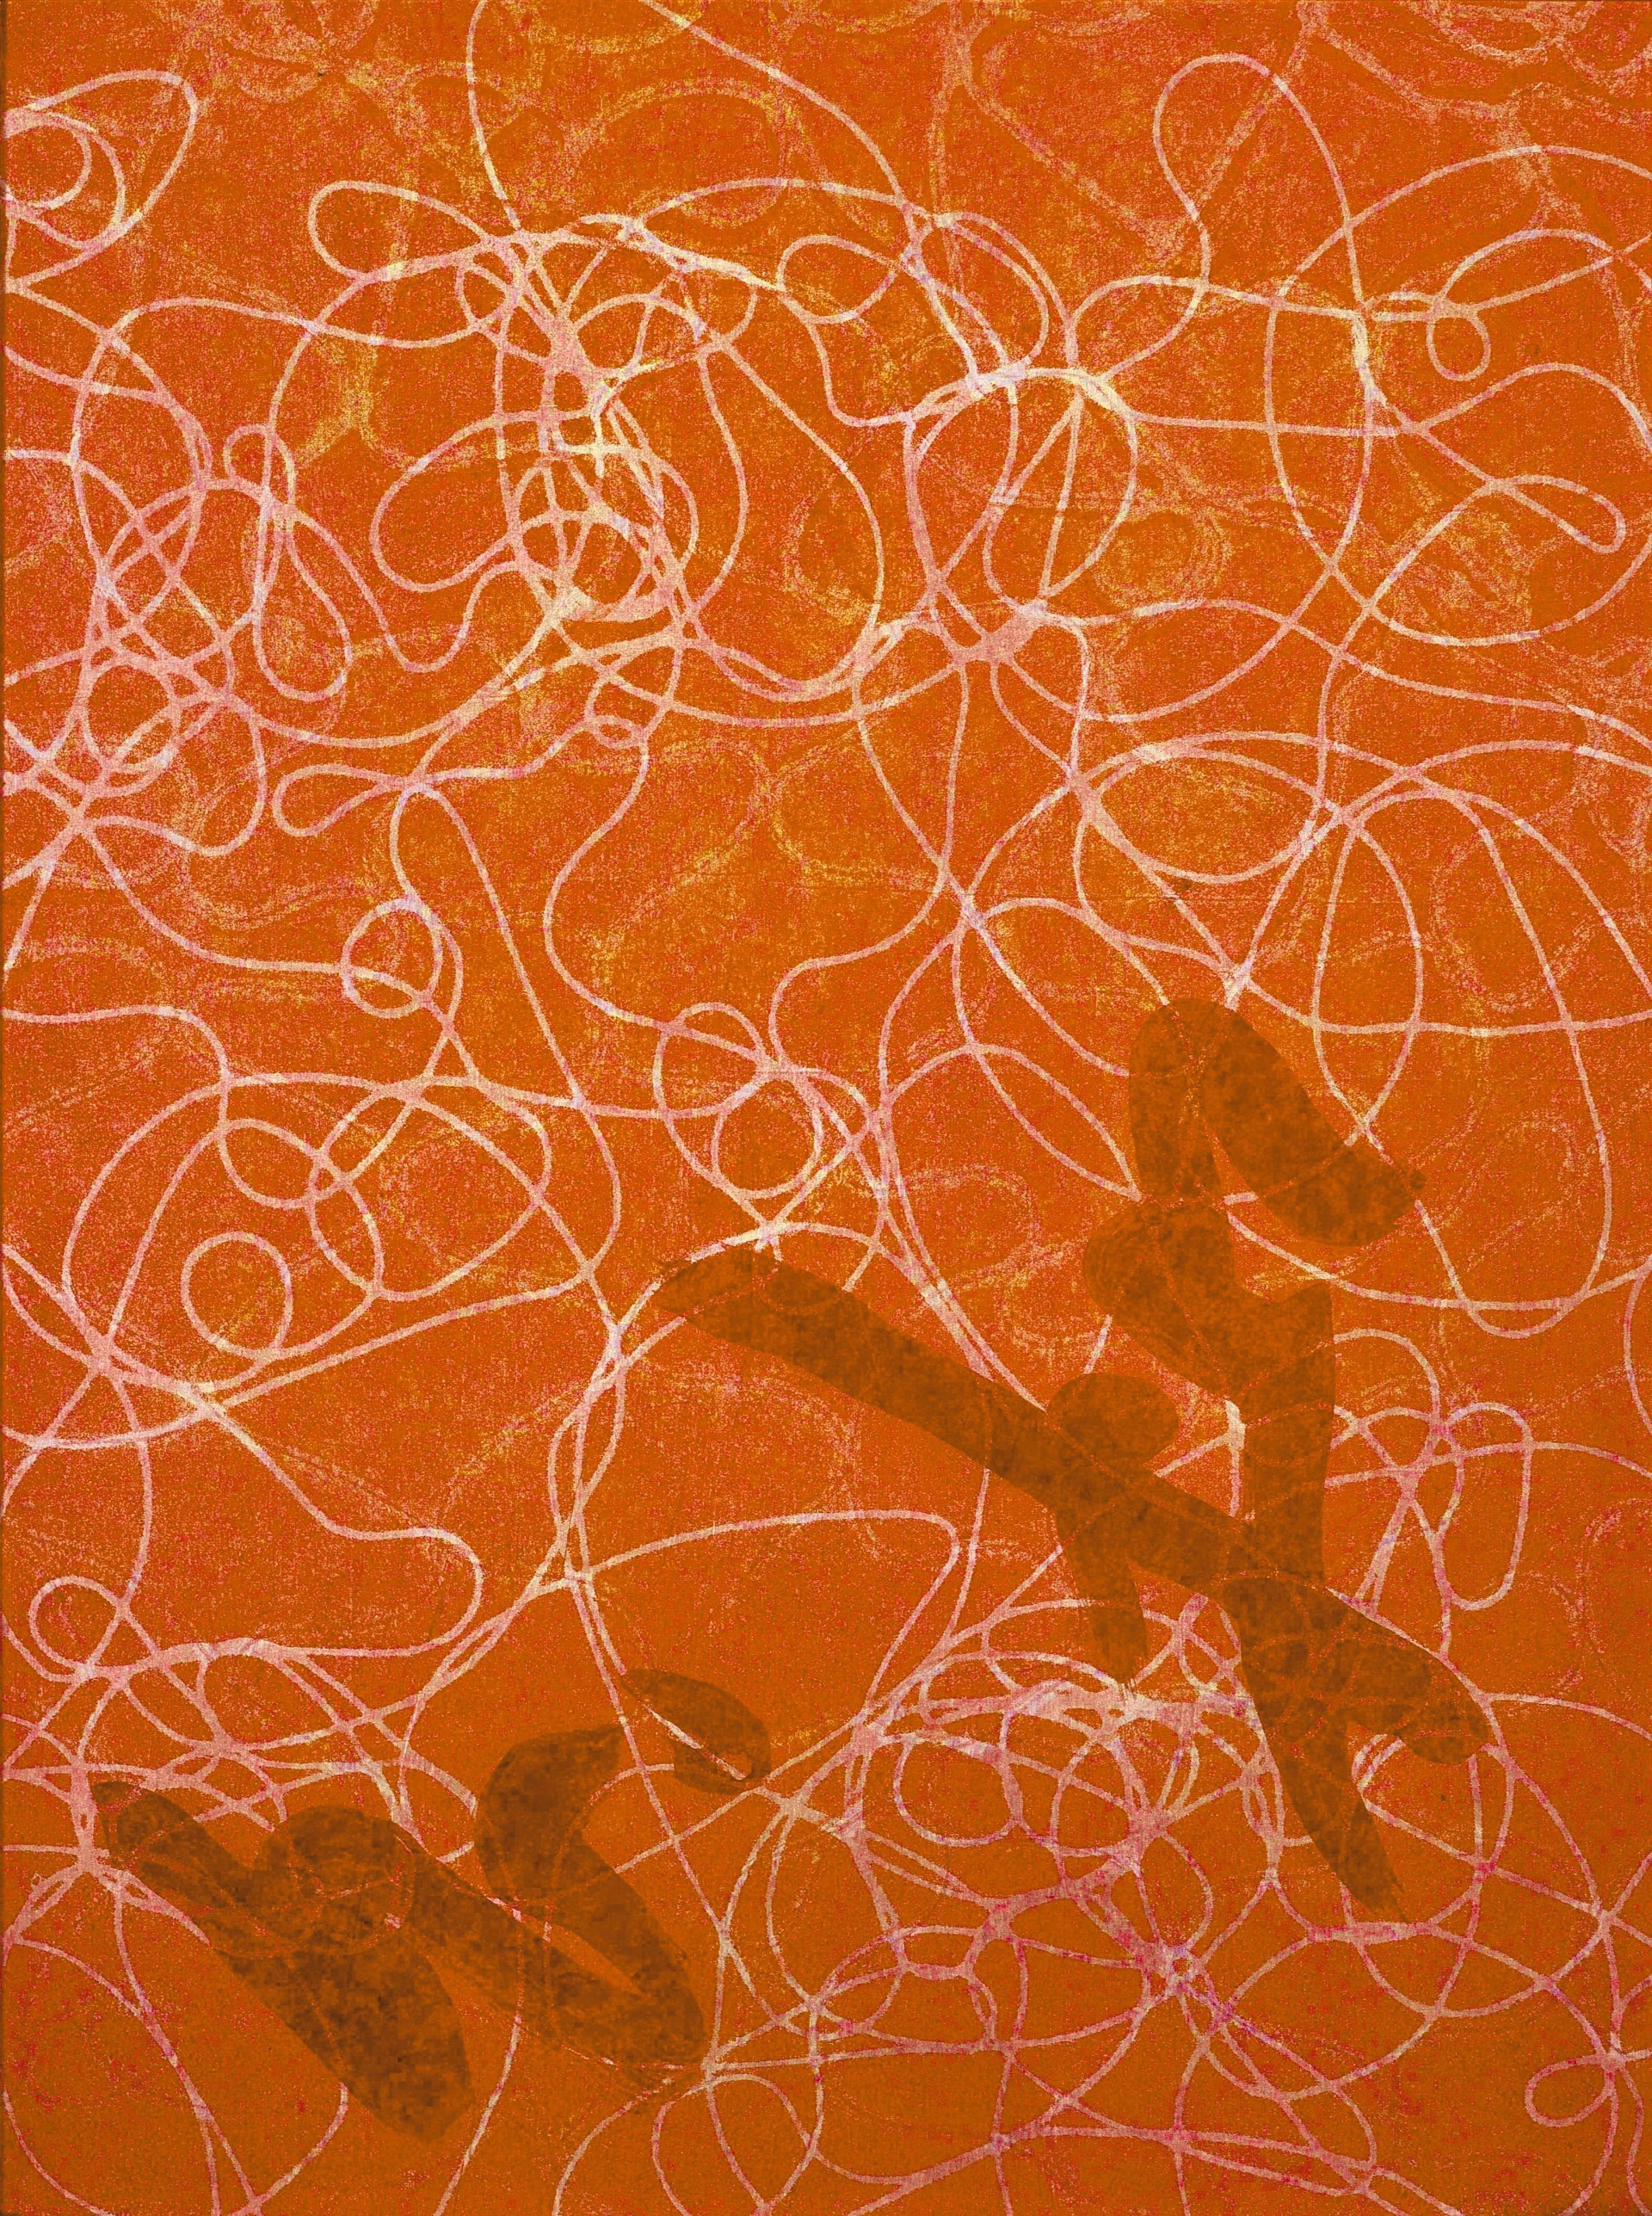 Orange Samba by Joan Wortis